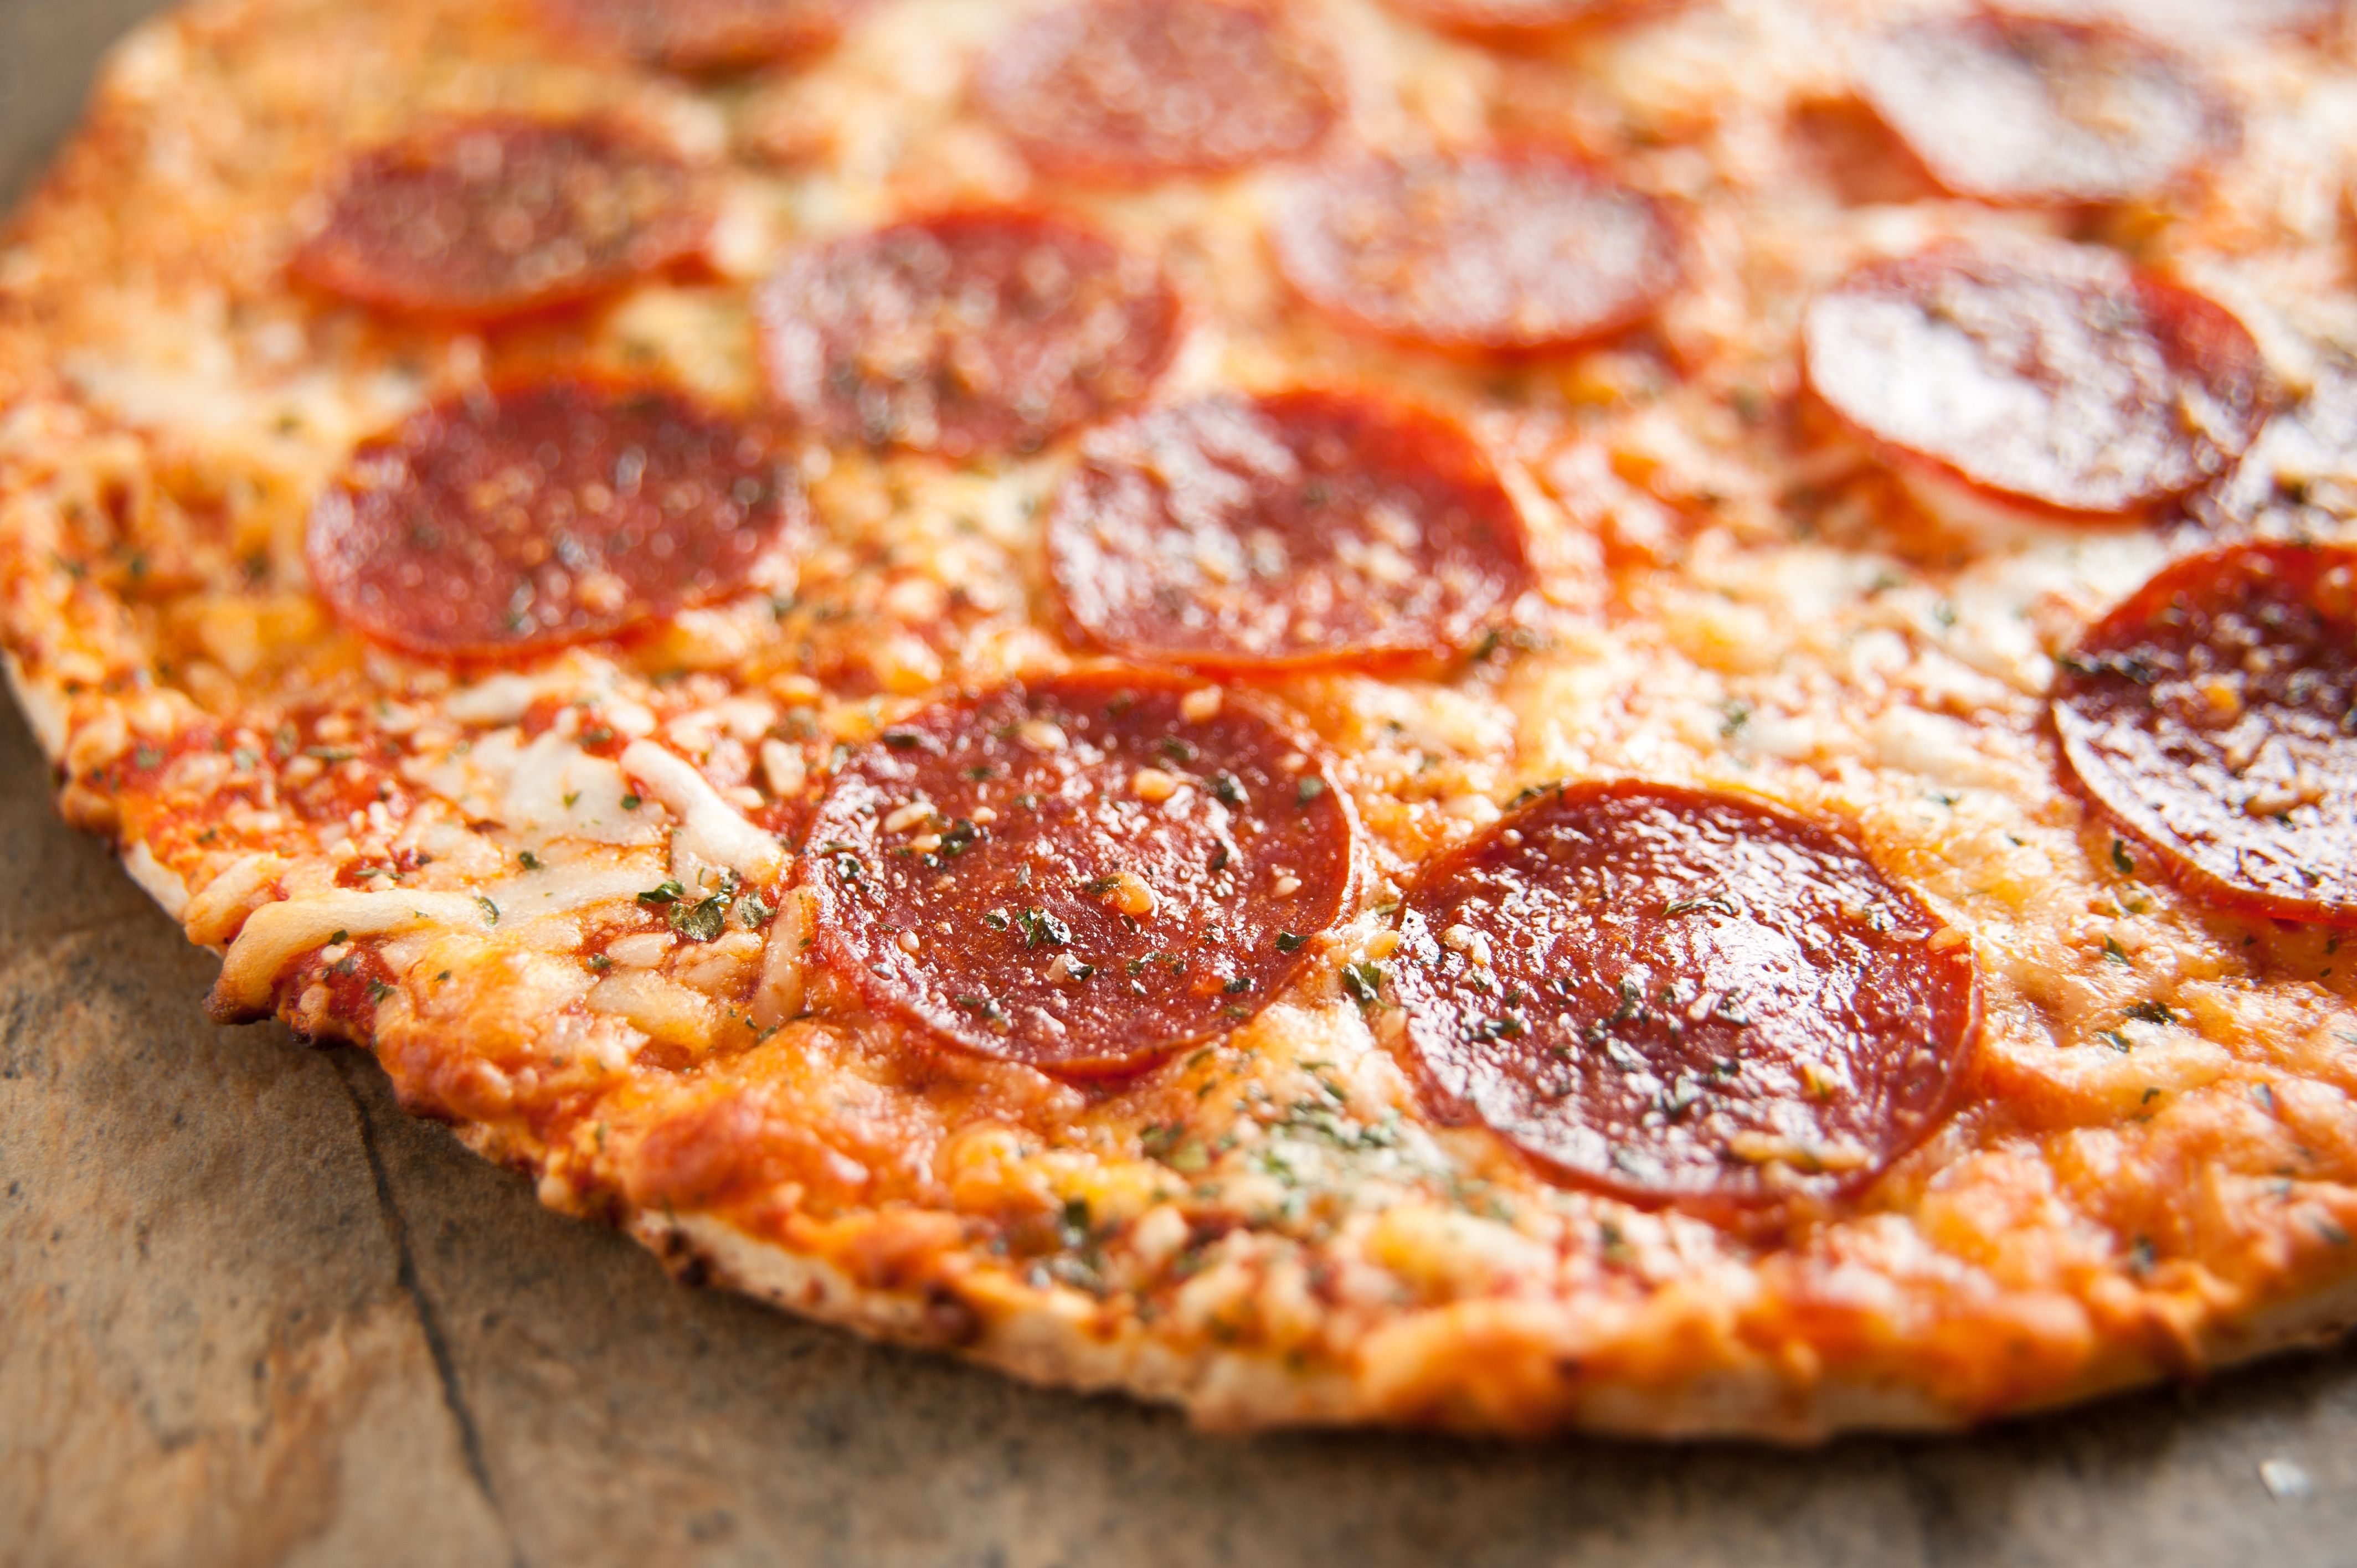 сколько калорий в одном куске пиццы пепперони додо фото 72